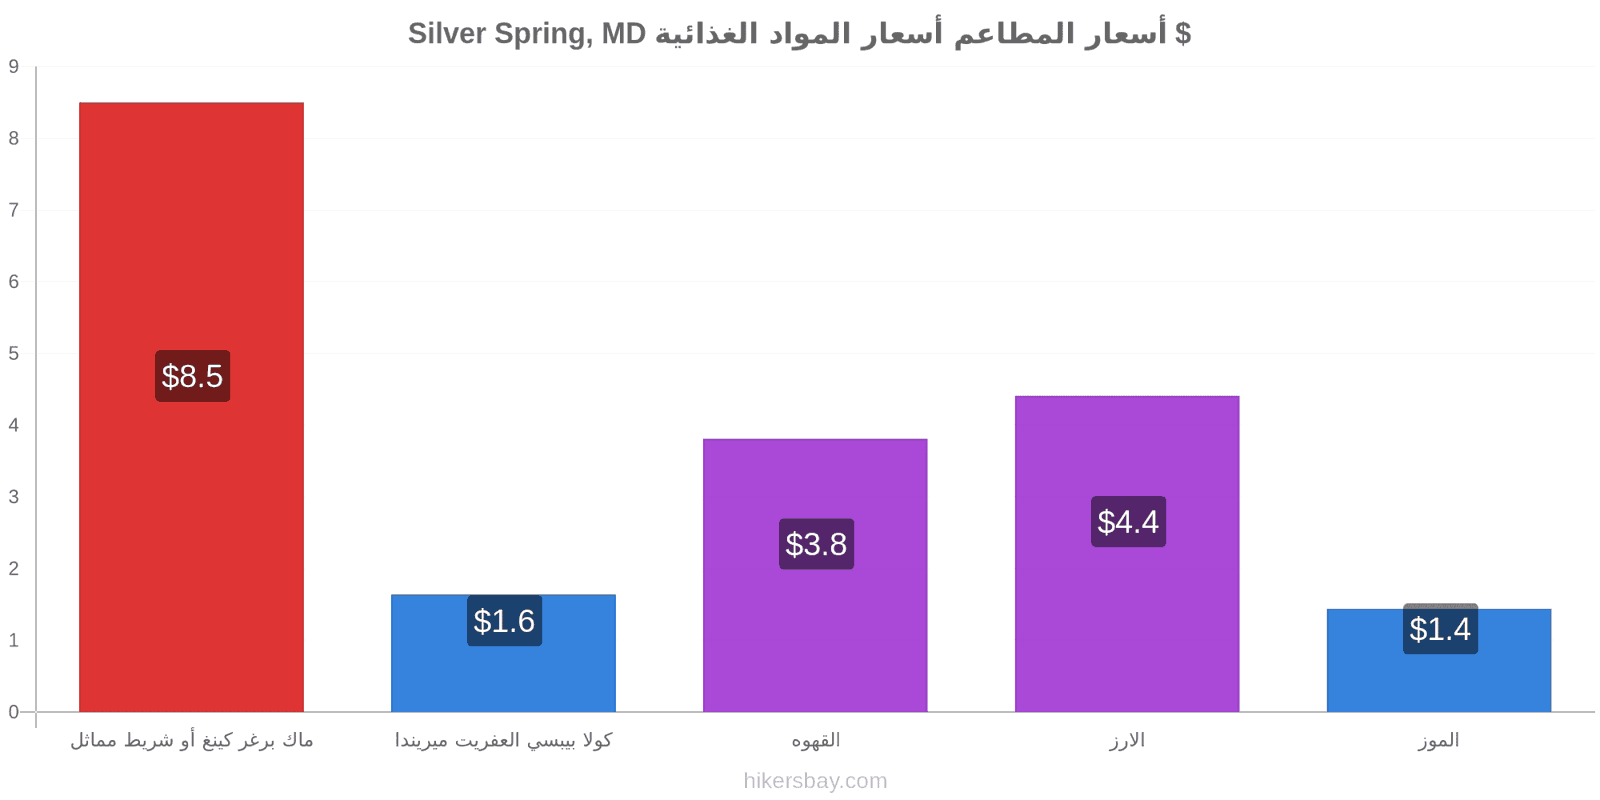 Silver Spring, MD تغييرات الأسعار hikersbay.com